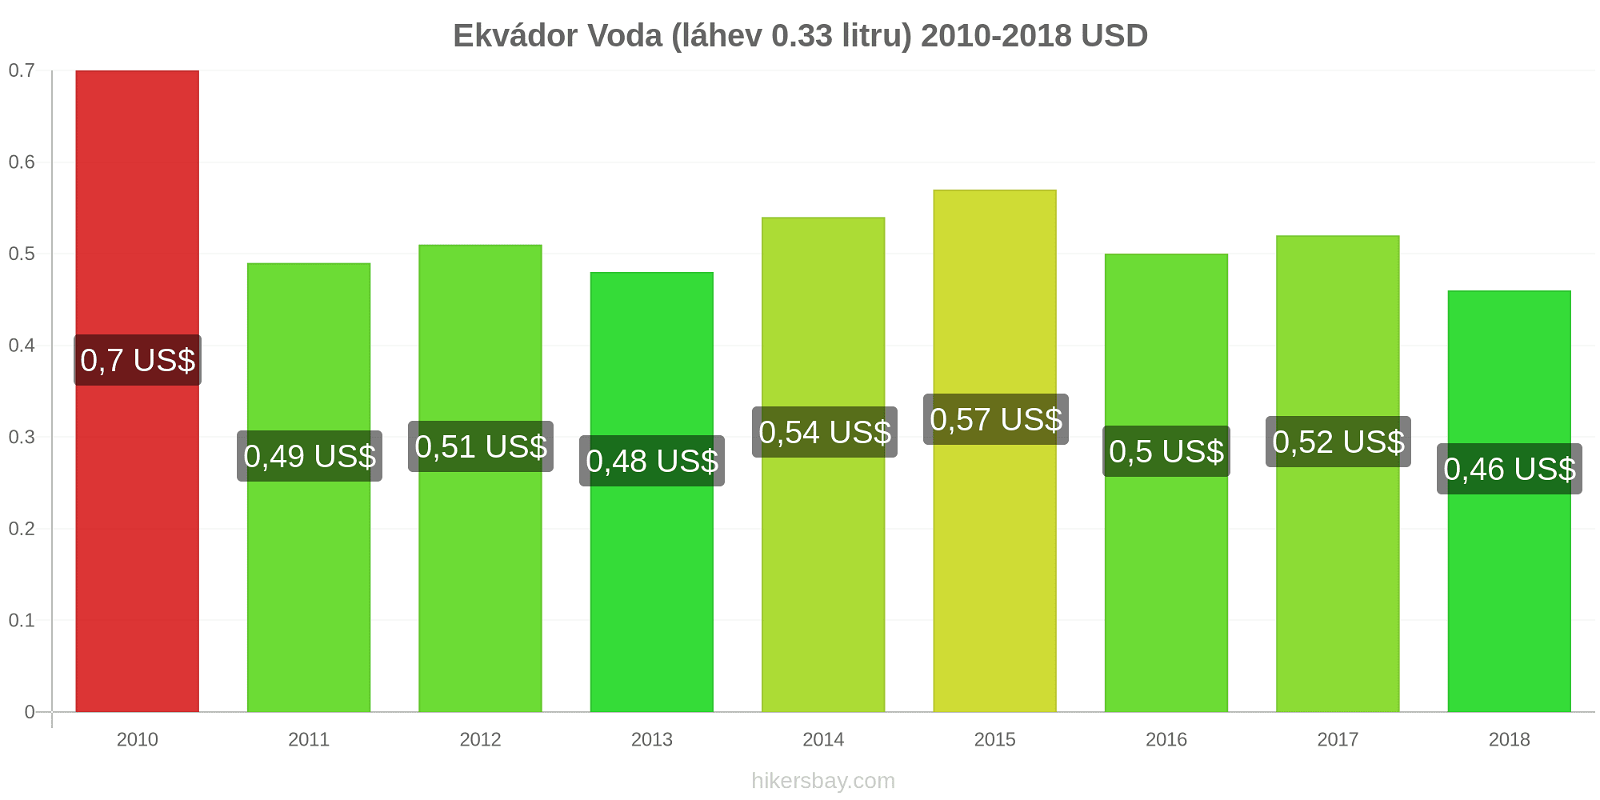 Ekvádor změny cen Voda (láhev 0.33 litru) hikersbay.com